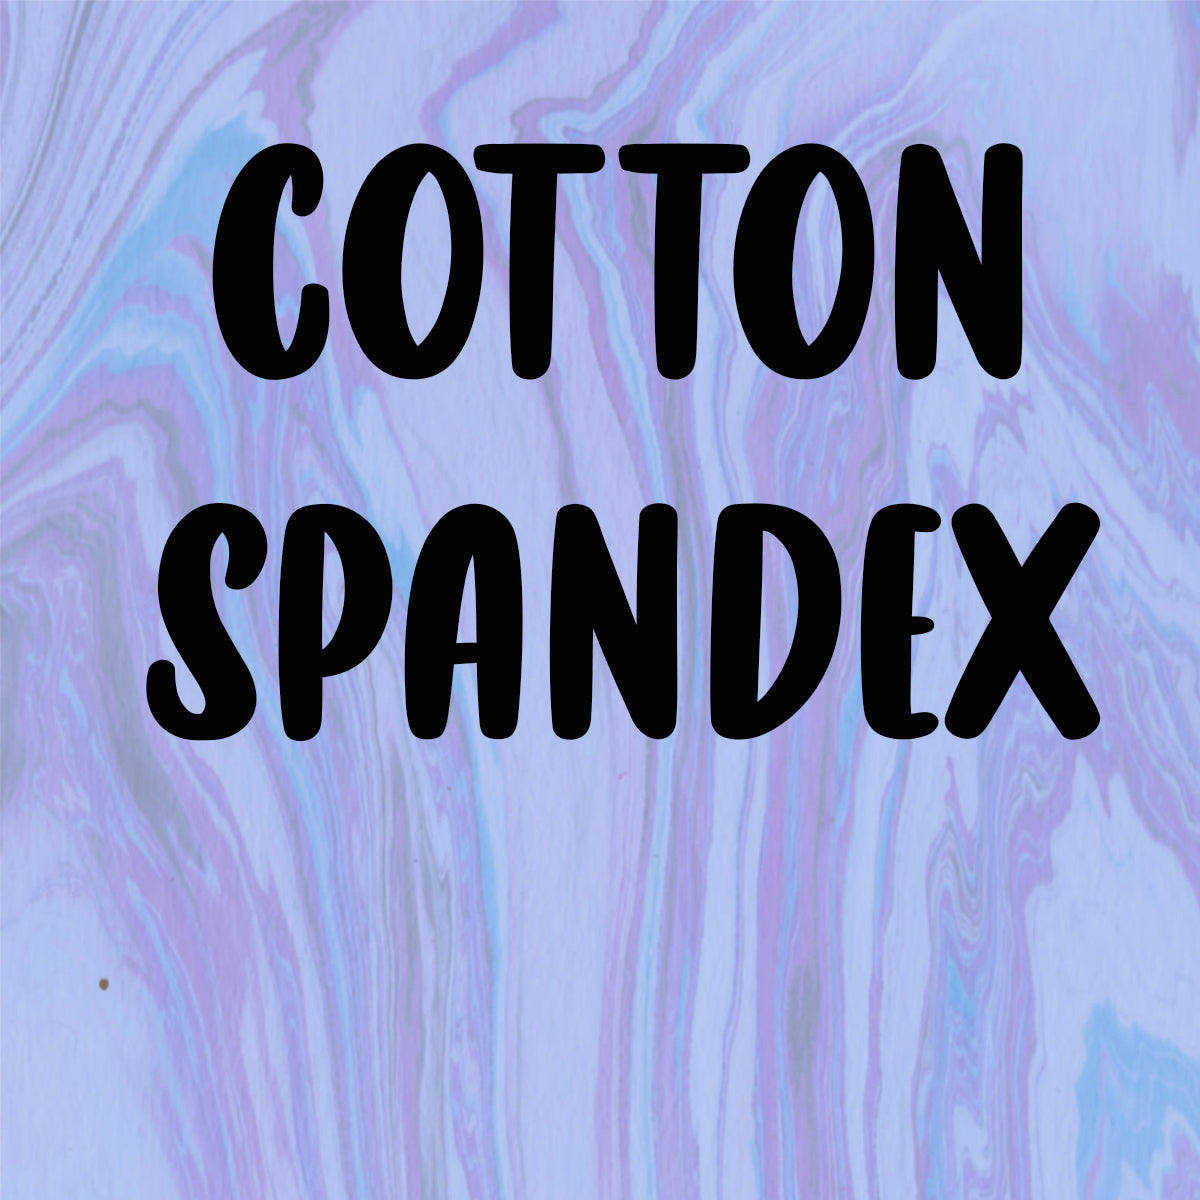 COTTON SPANDEX *COTTONS*